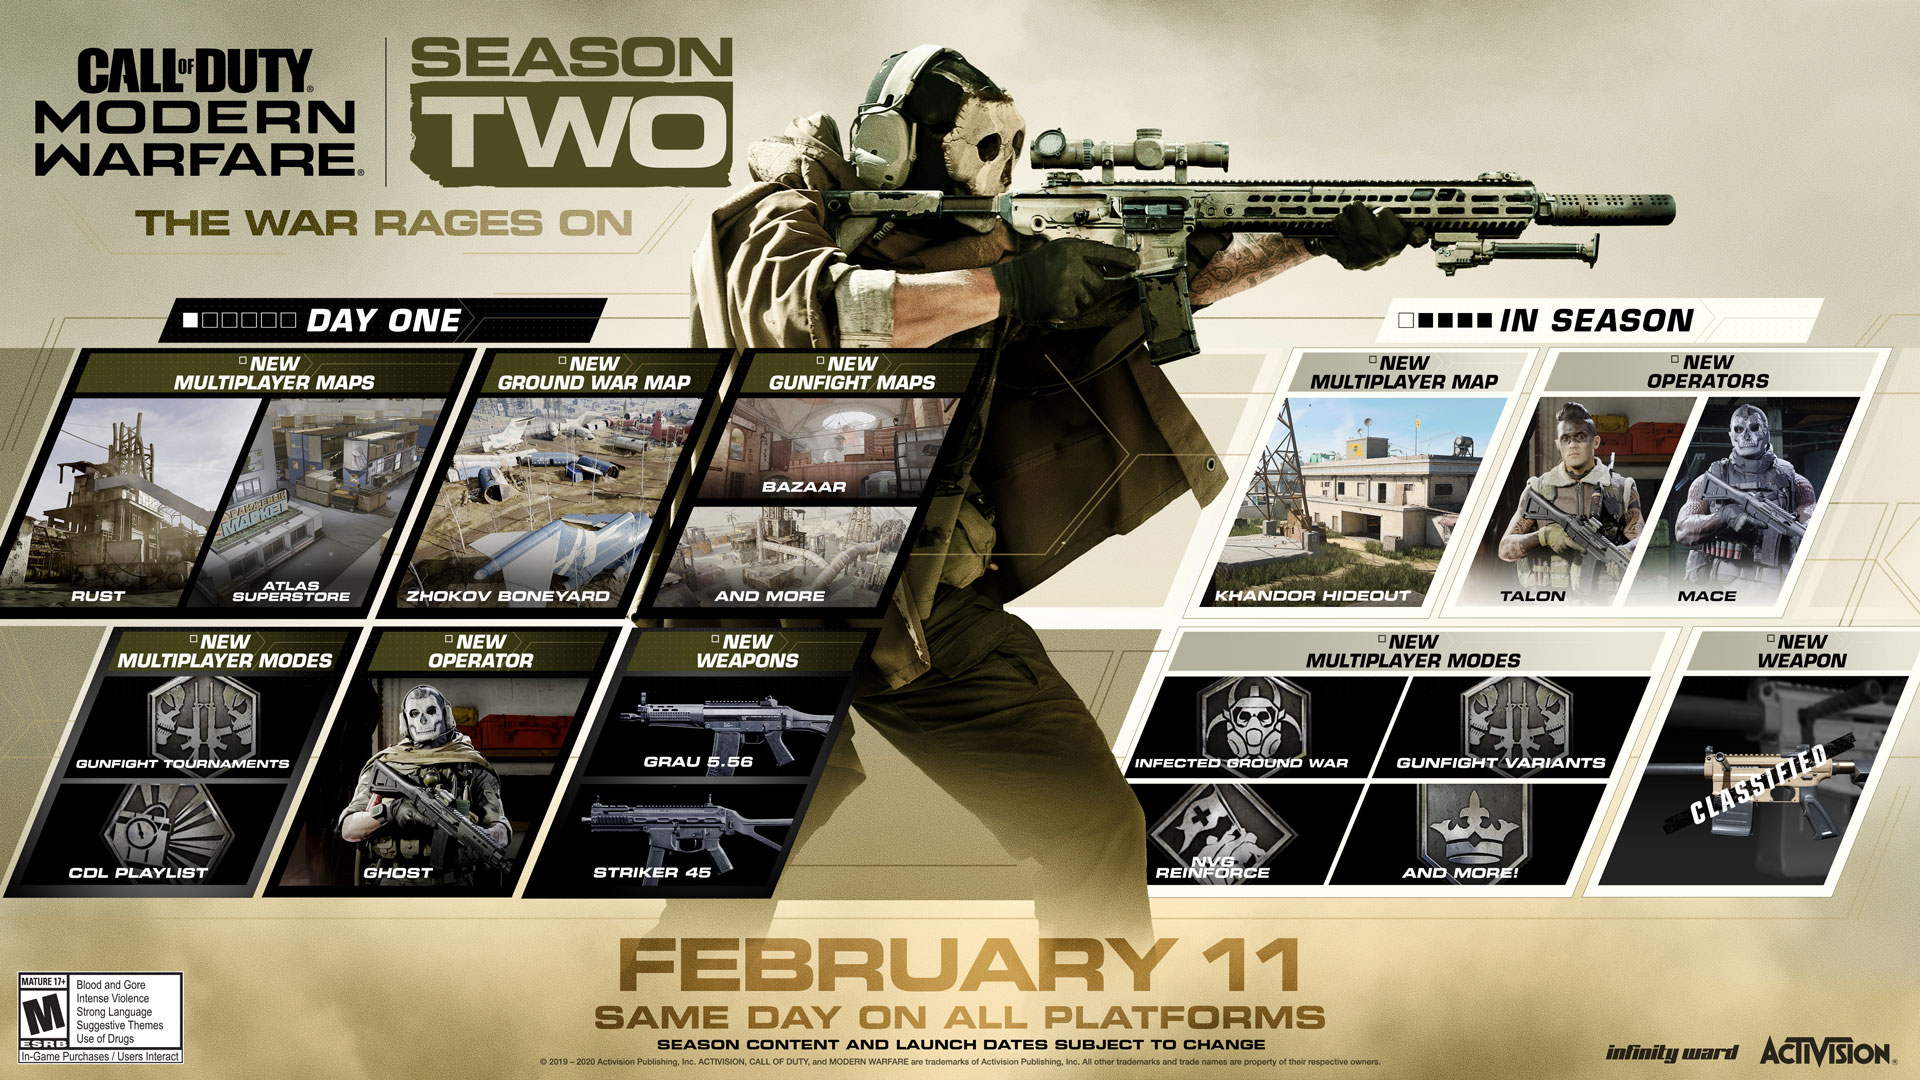 Tak prezentuje się grafika z całą zawartością sezonu 2. - Dziś rusza 2. sezon w Call of Duty: Modern Warfare - wiadomość - 2020-02-11